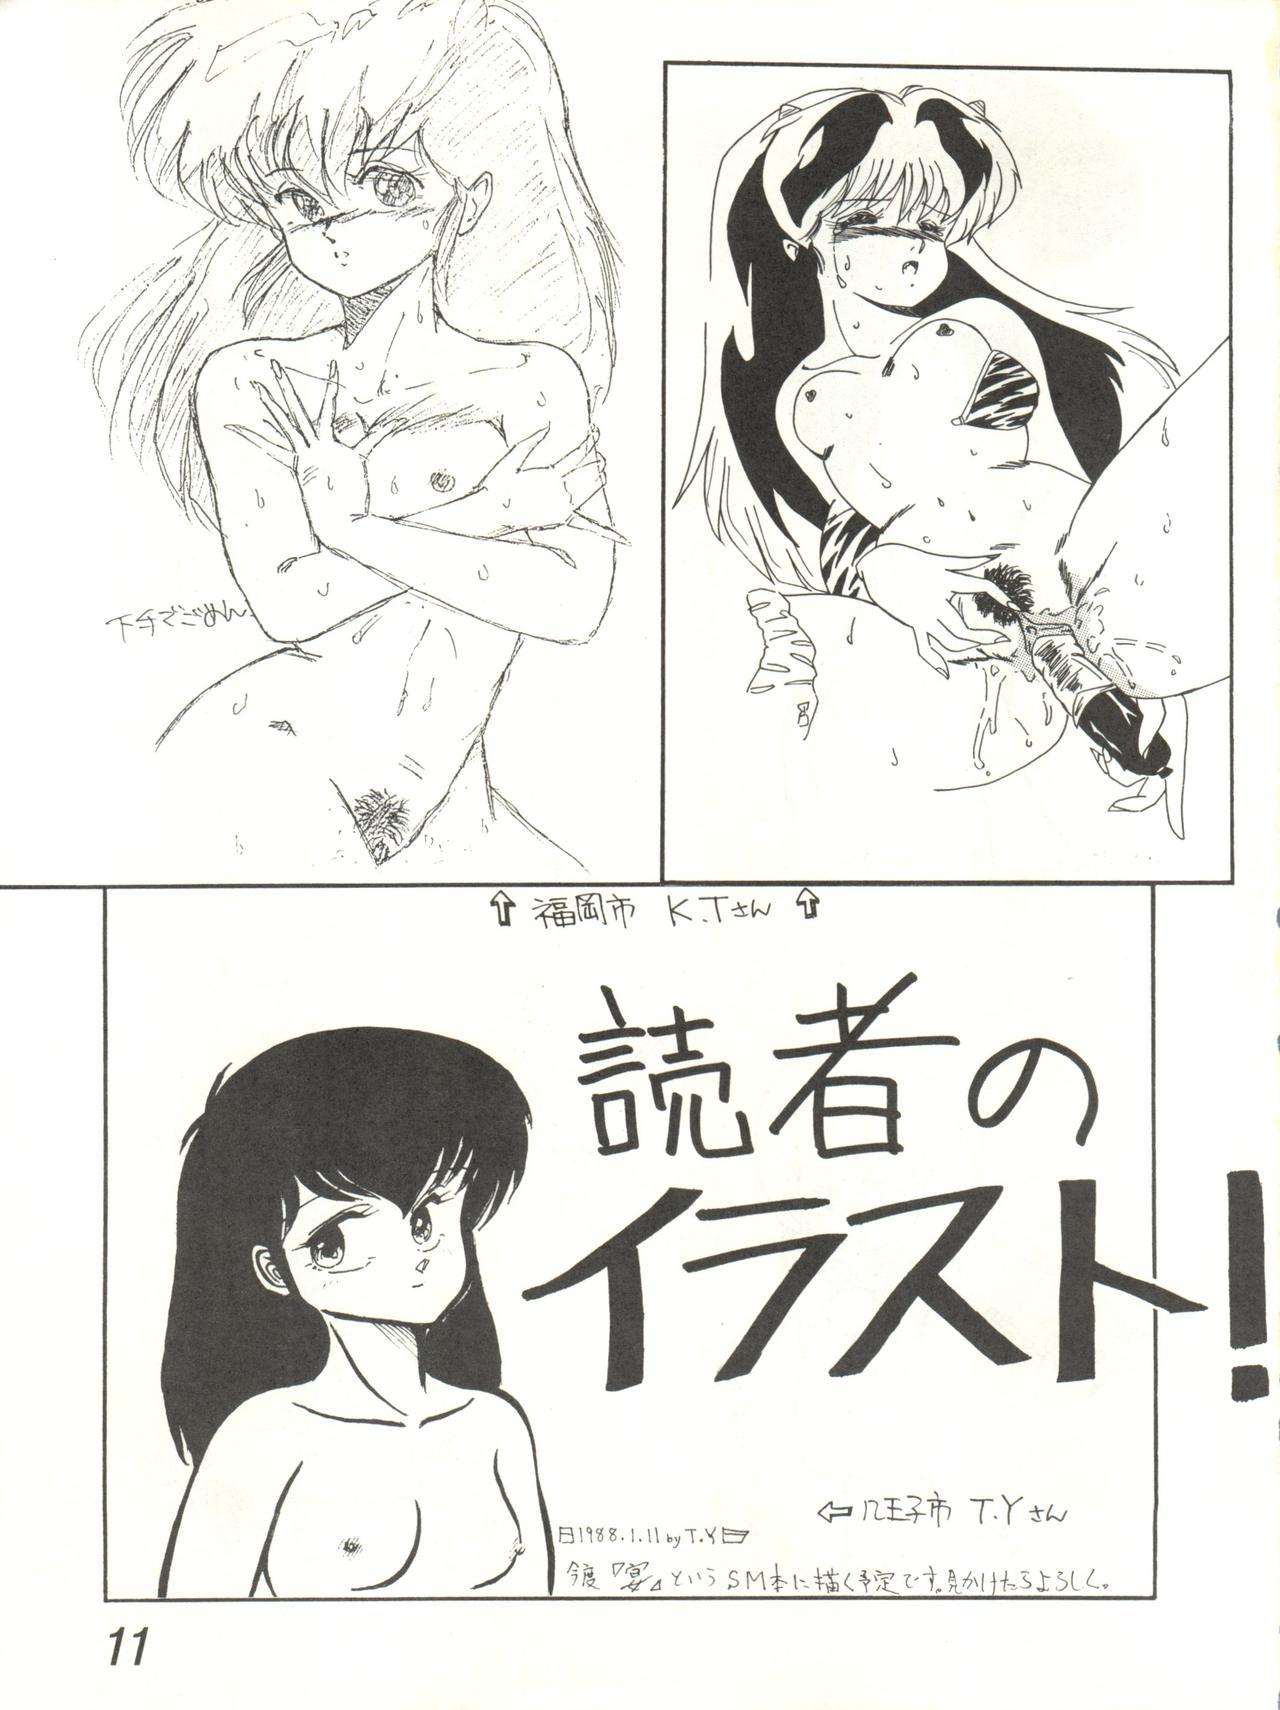 Publico Ikkoku-kan 0 Gou Shitsu Part V - Maison ikkoku Nena - Page 11